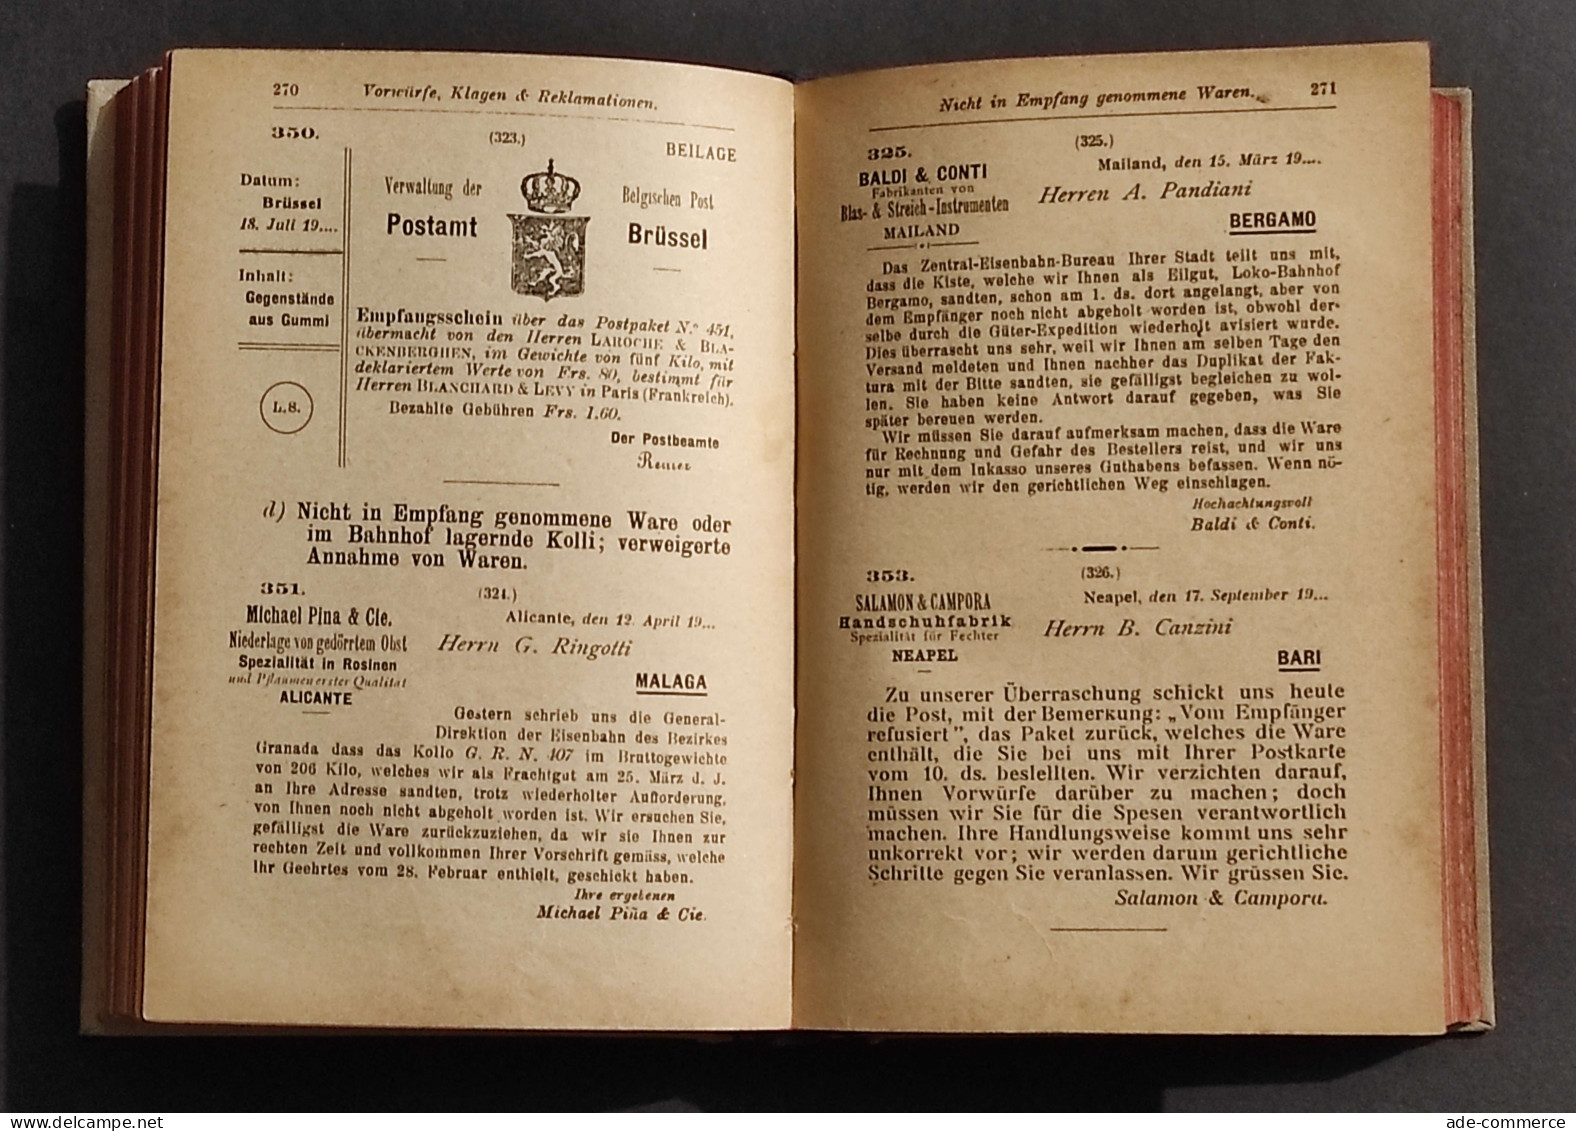 Deutsche Handelskorrespondenz - G. Frisoni - Manuali Hoepli - 1922 - Handbücher Für Sammler